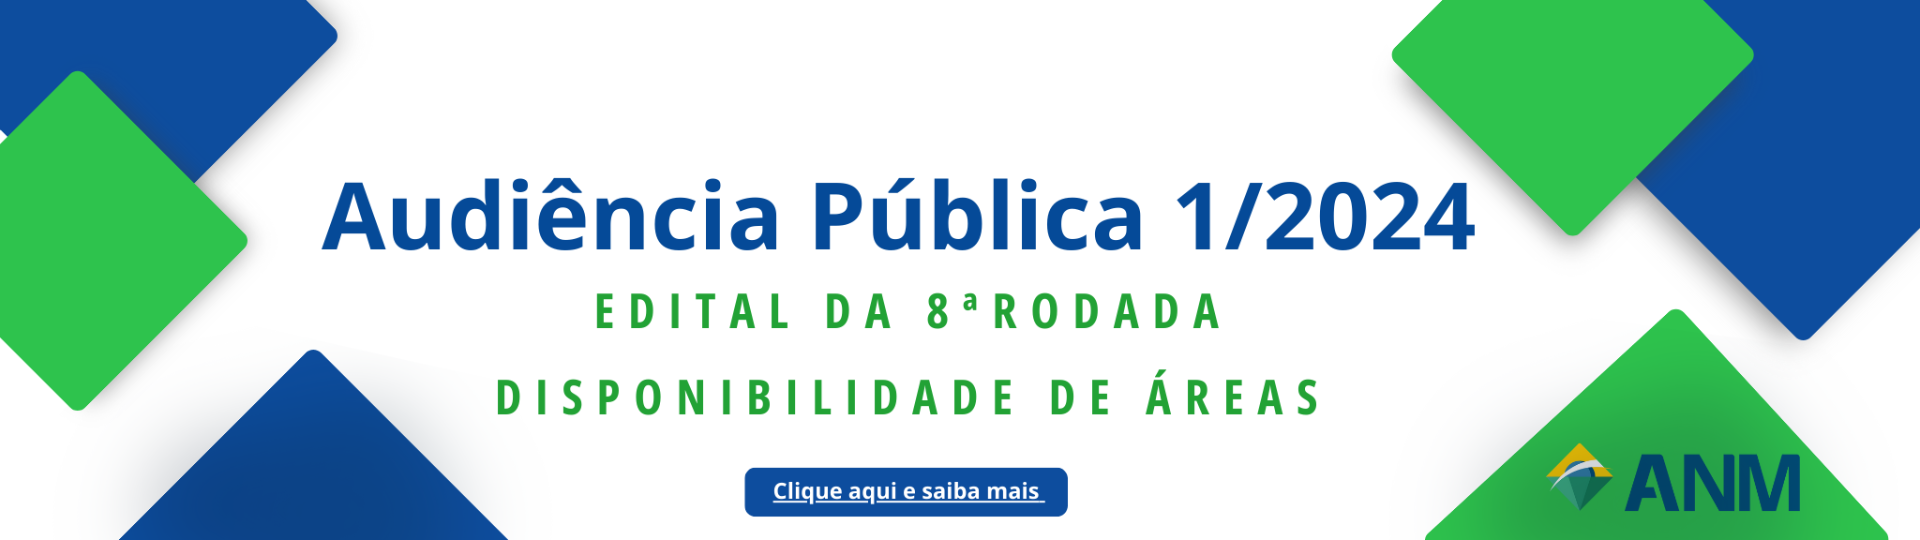 Banner Audiência Pública 2.png